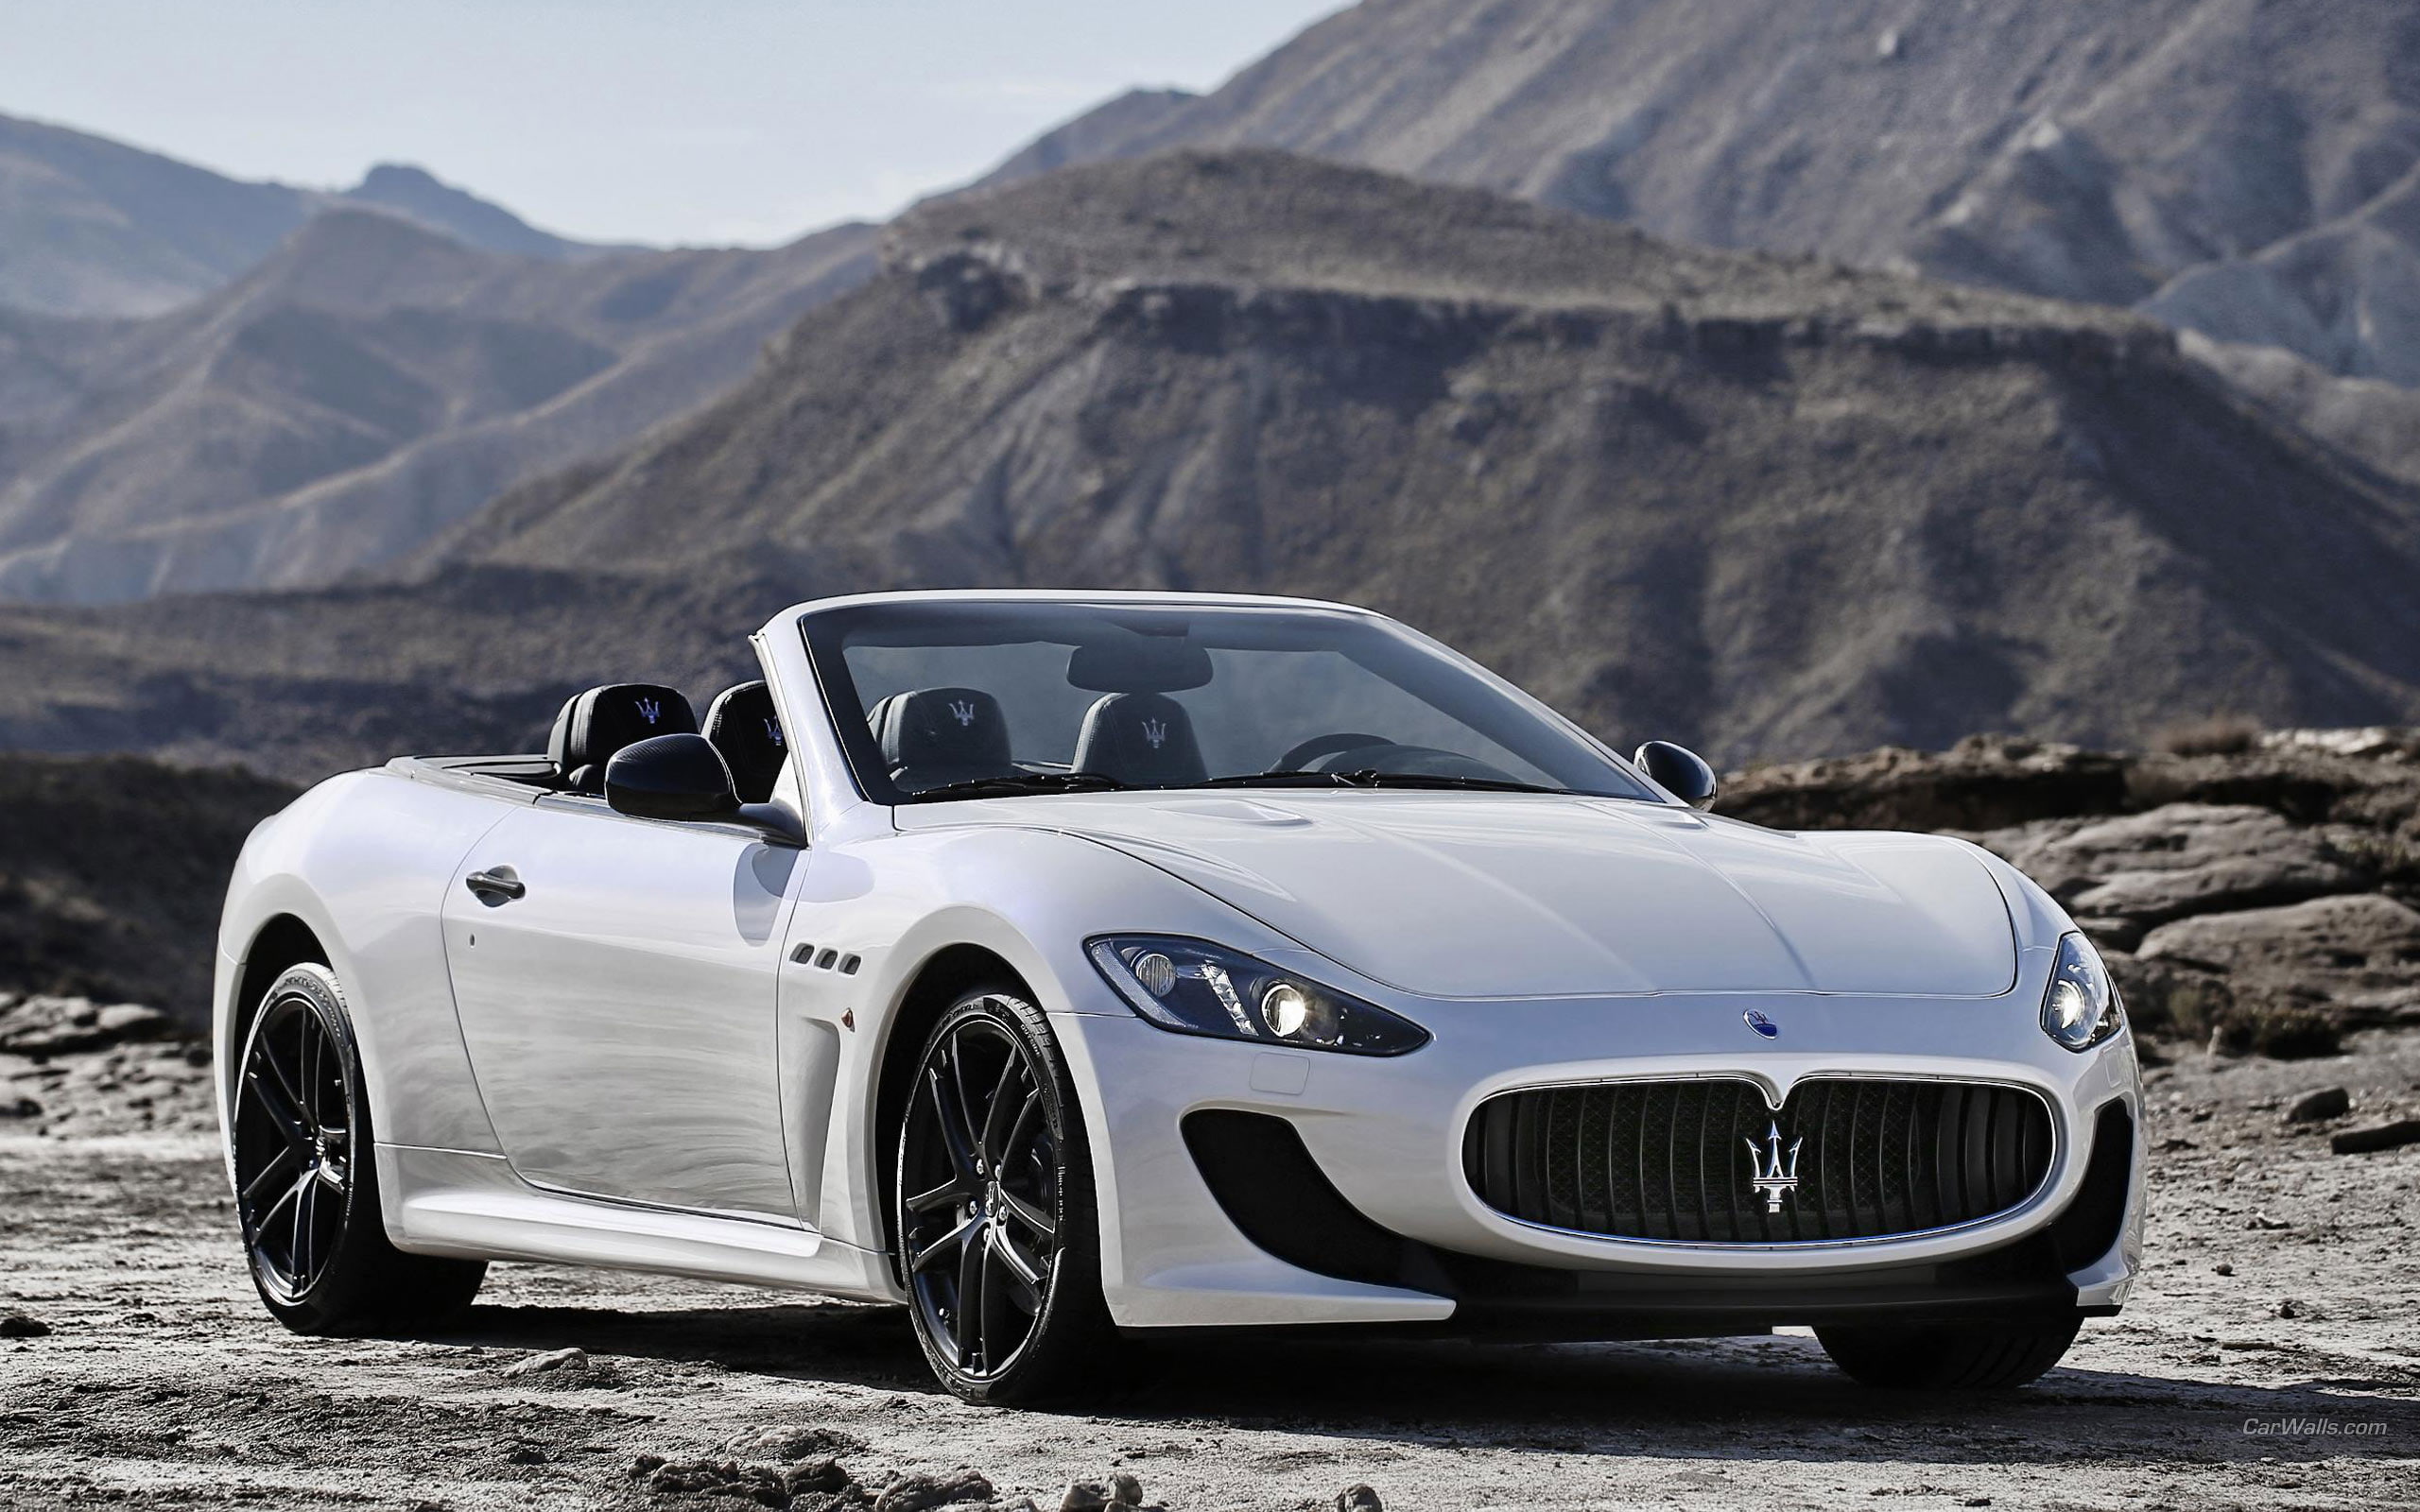 Maserati Granturismo HD, white convertible coupe, cars